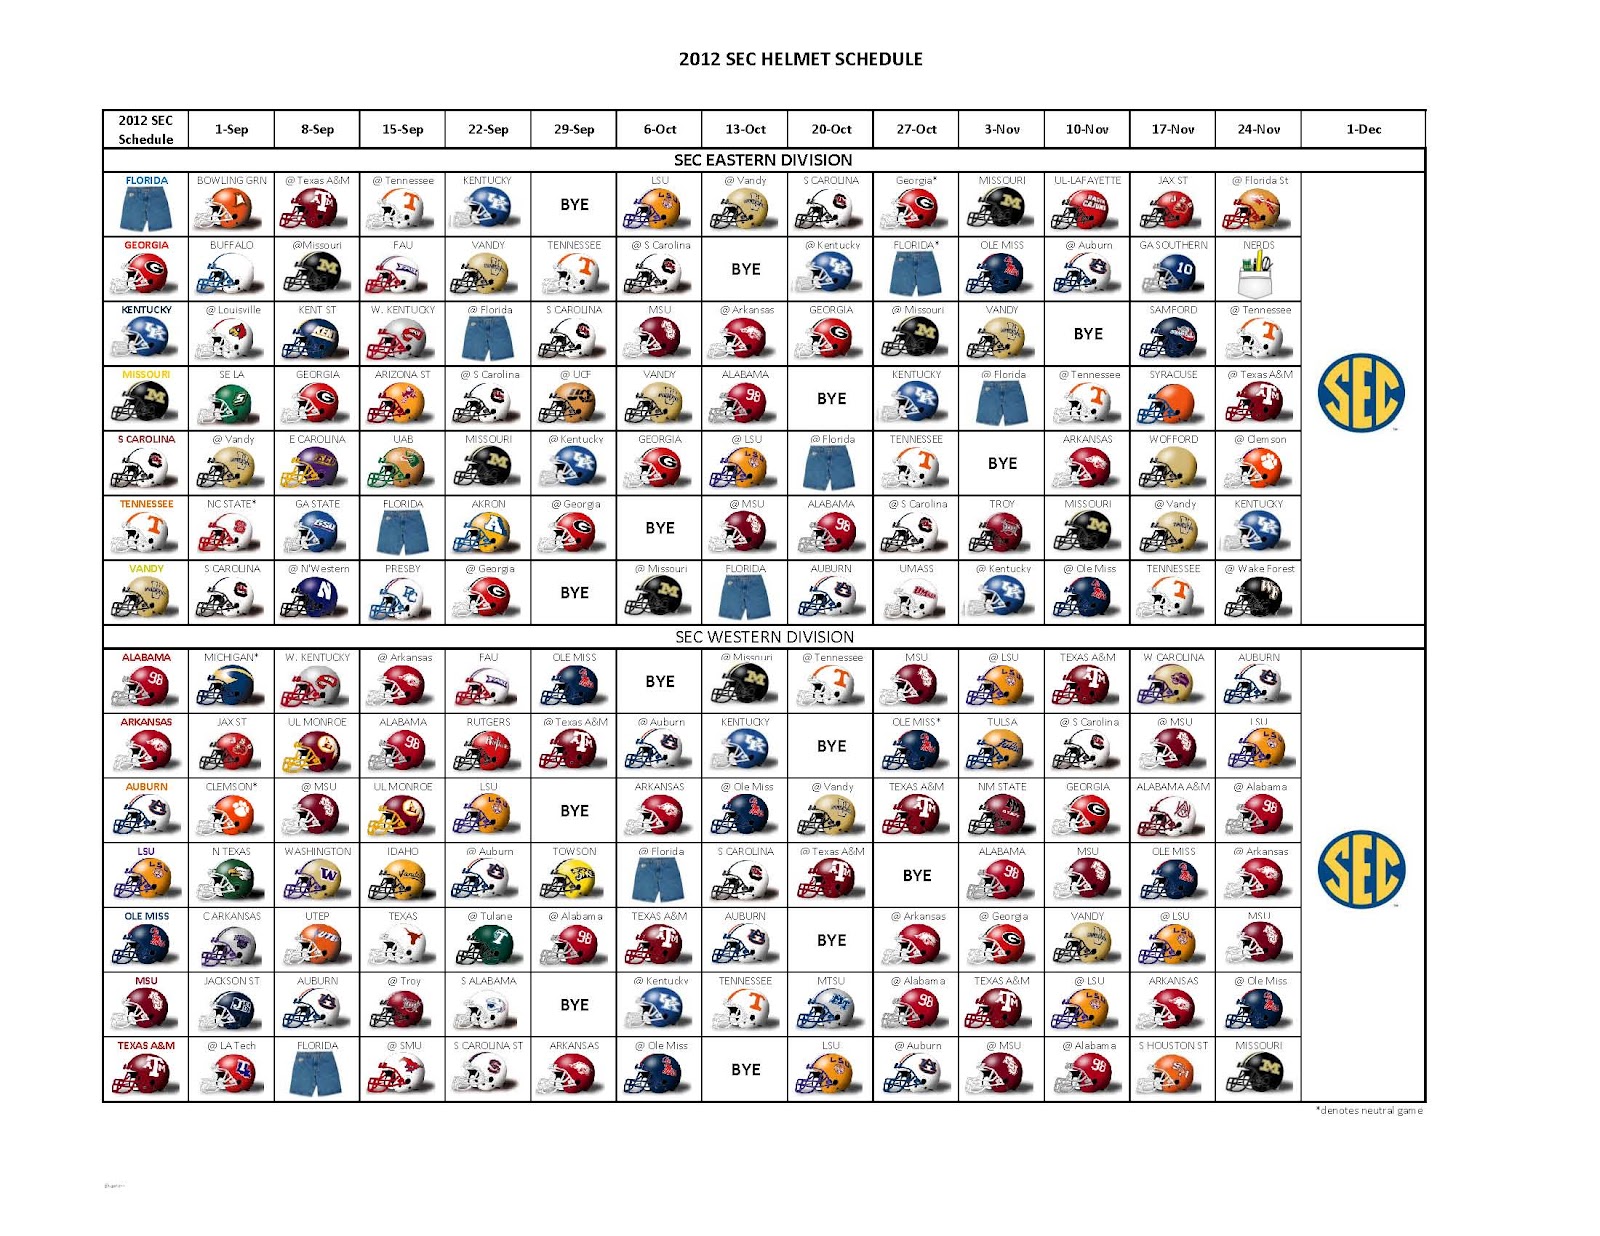 2012 Helmet Schedule 